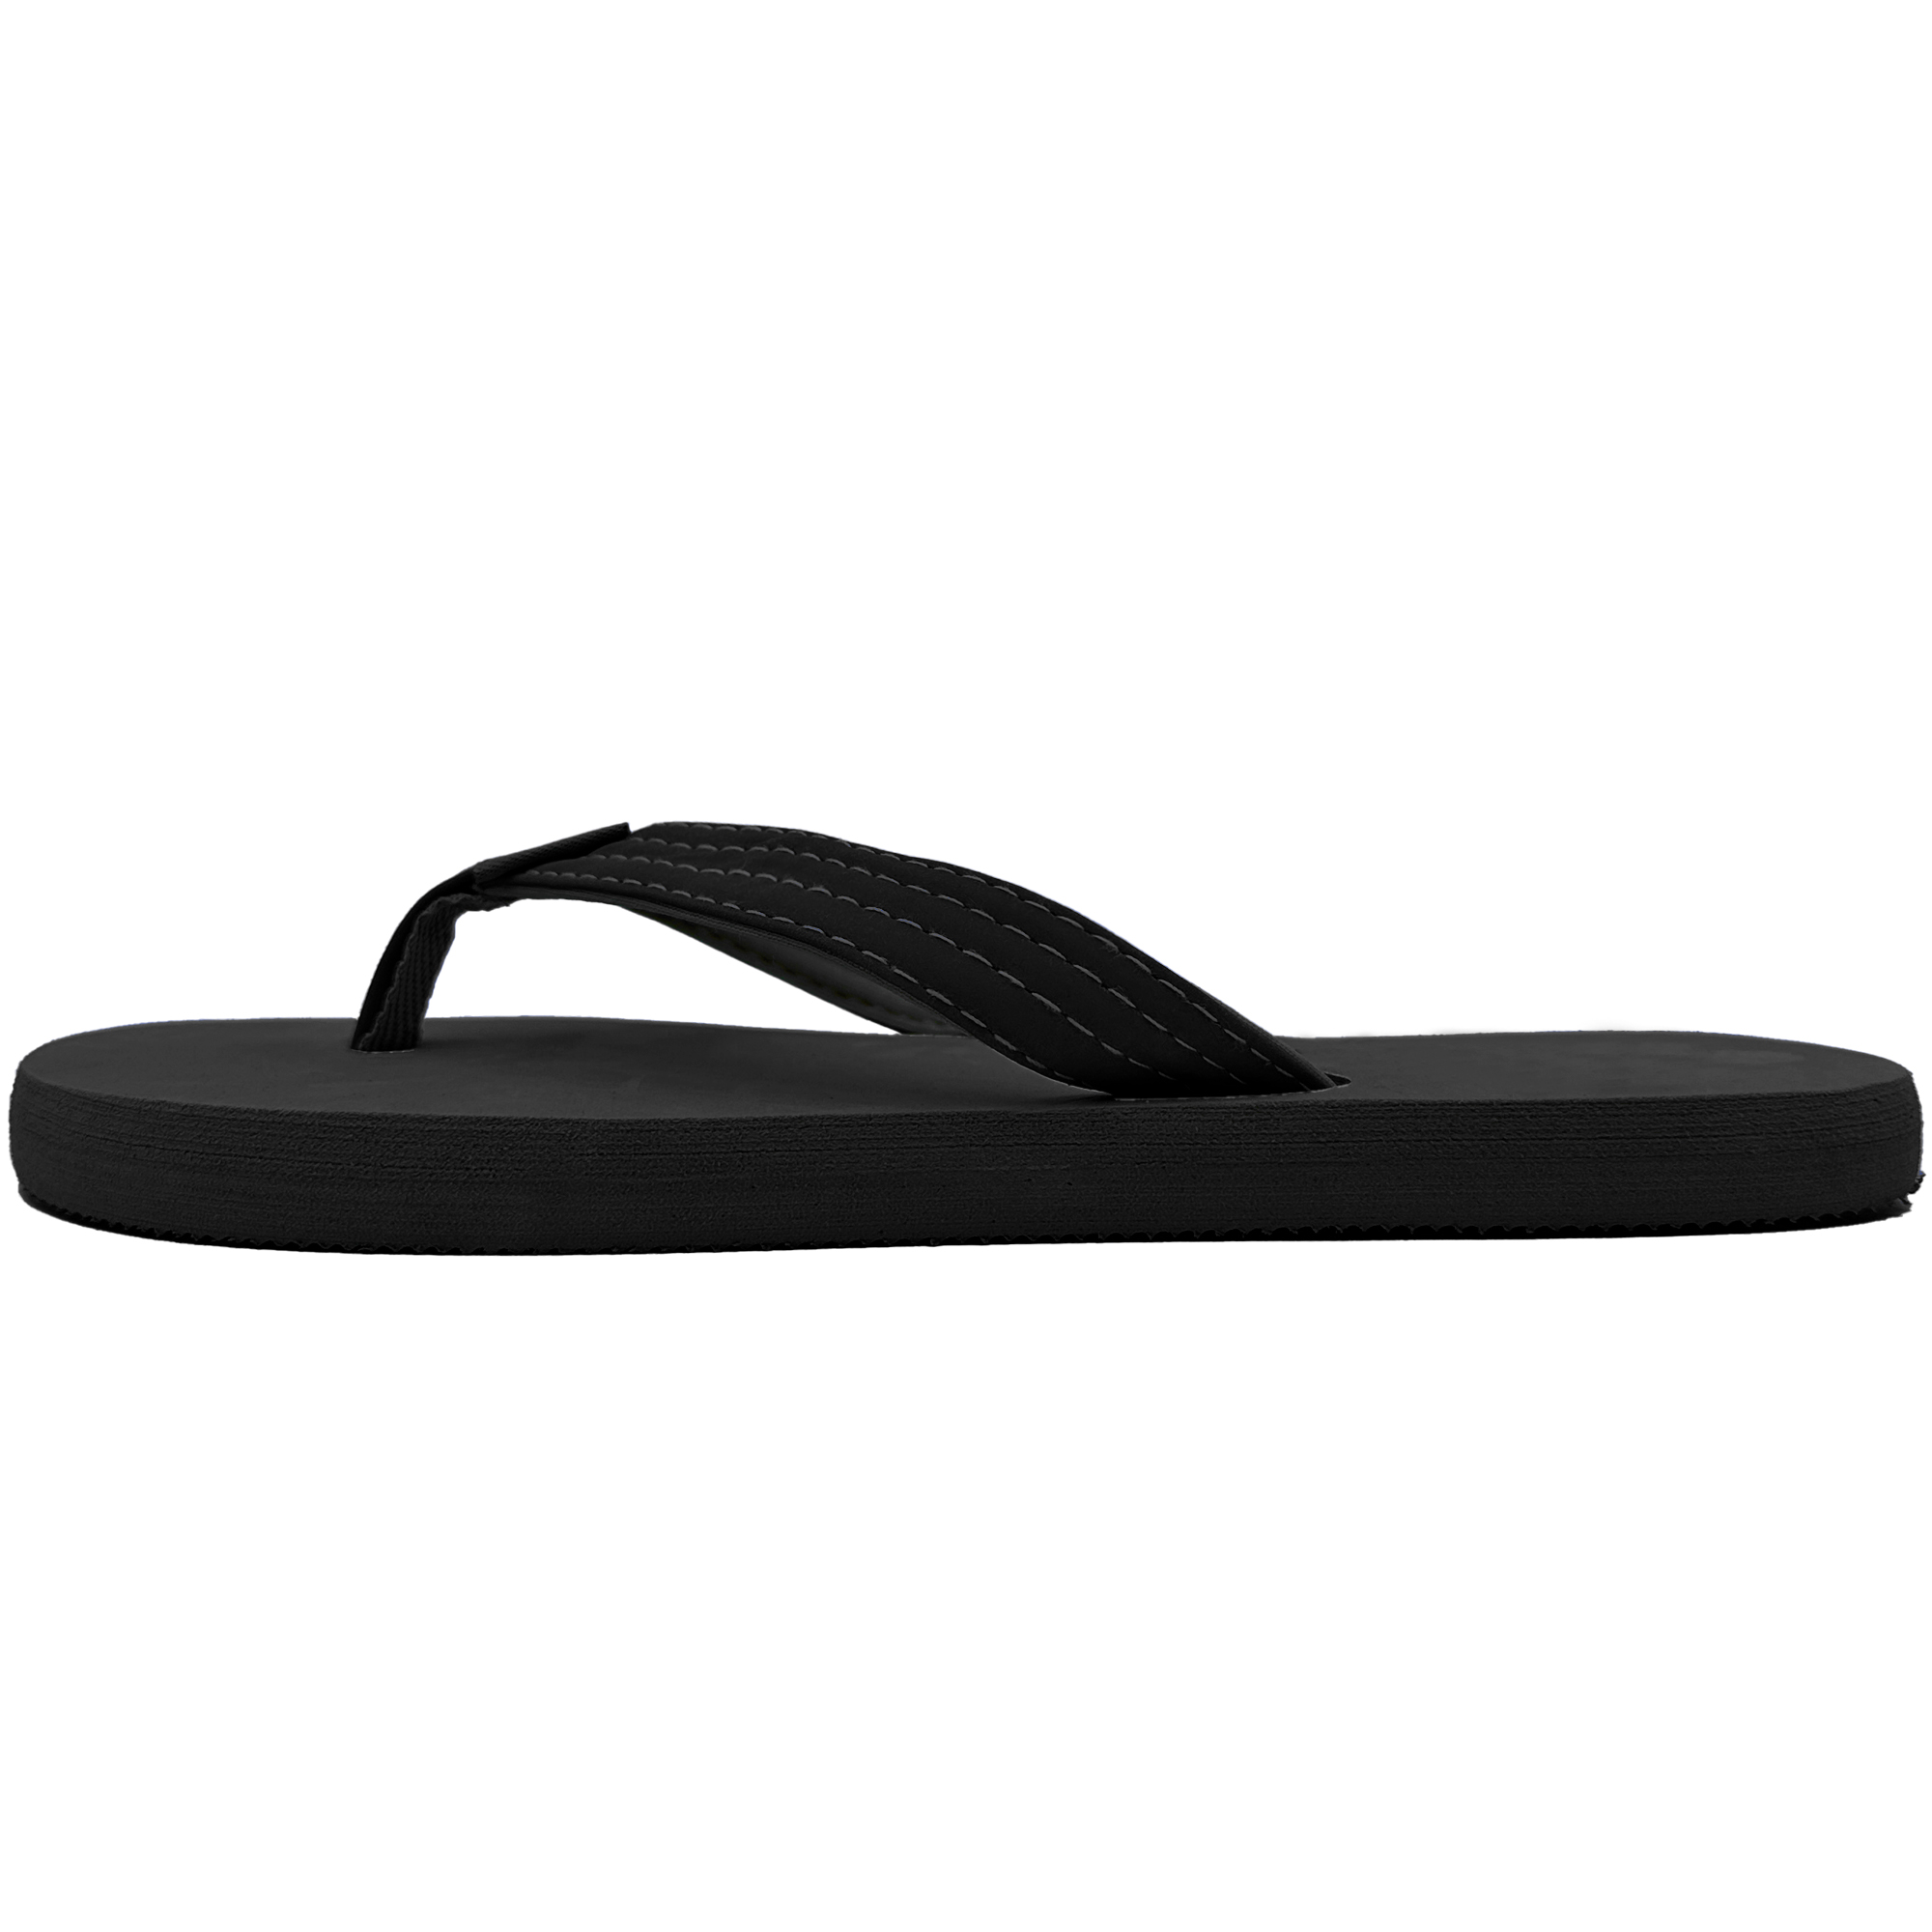 Women's Flip Flops Summer Beach T-Strap Thong Sandals | eBay